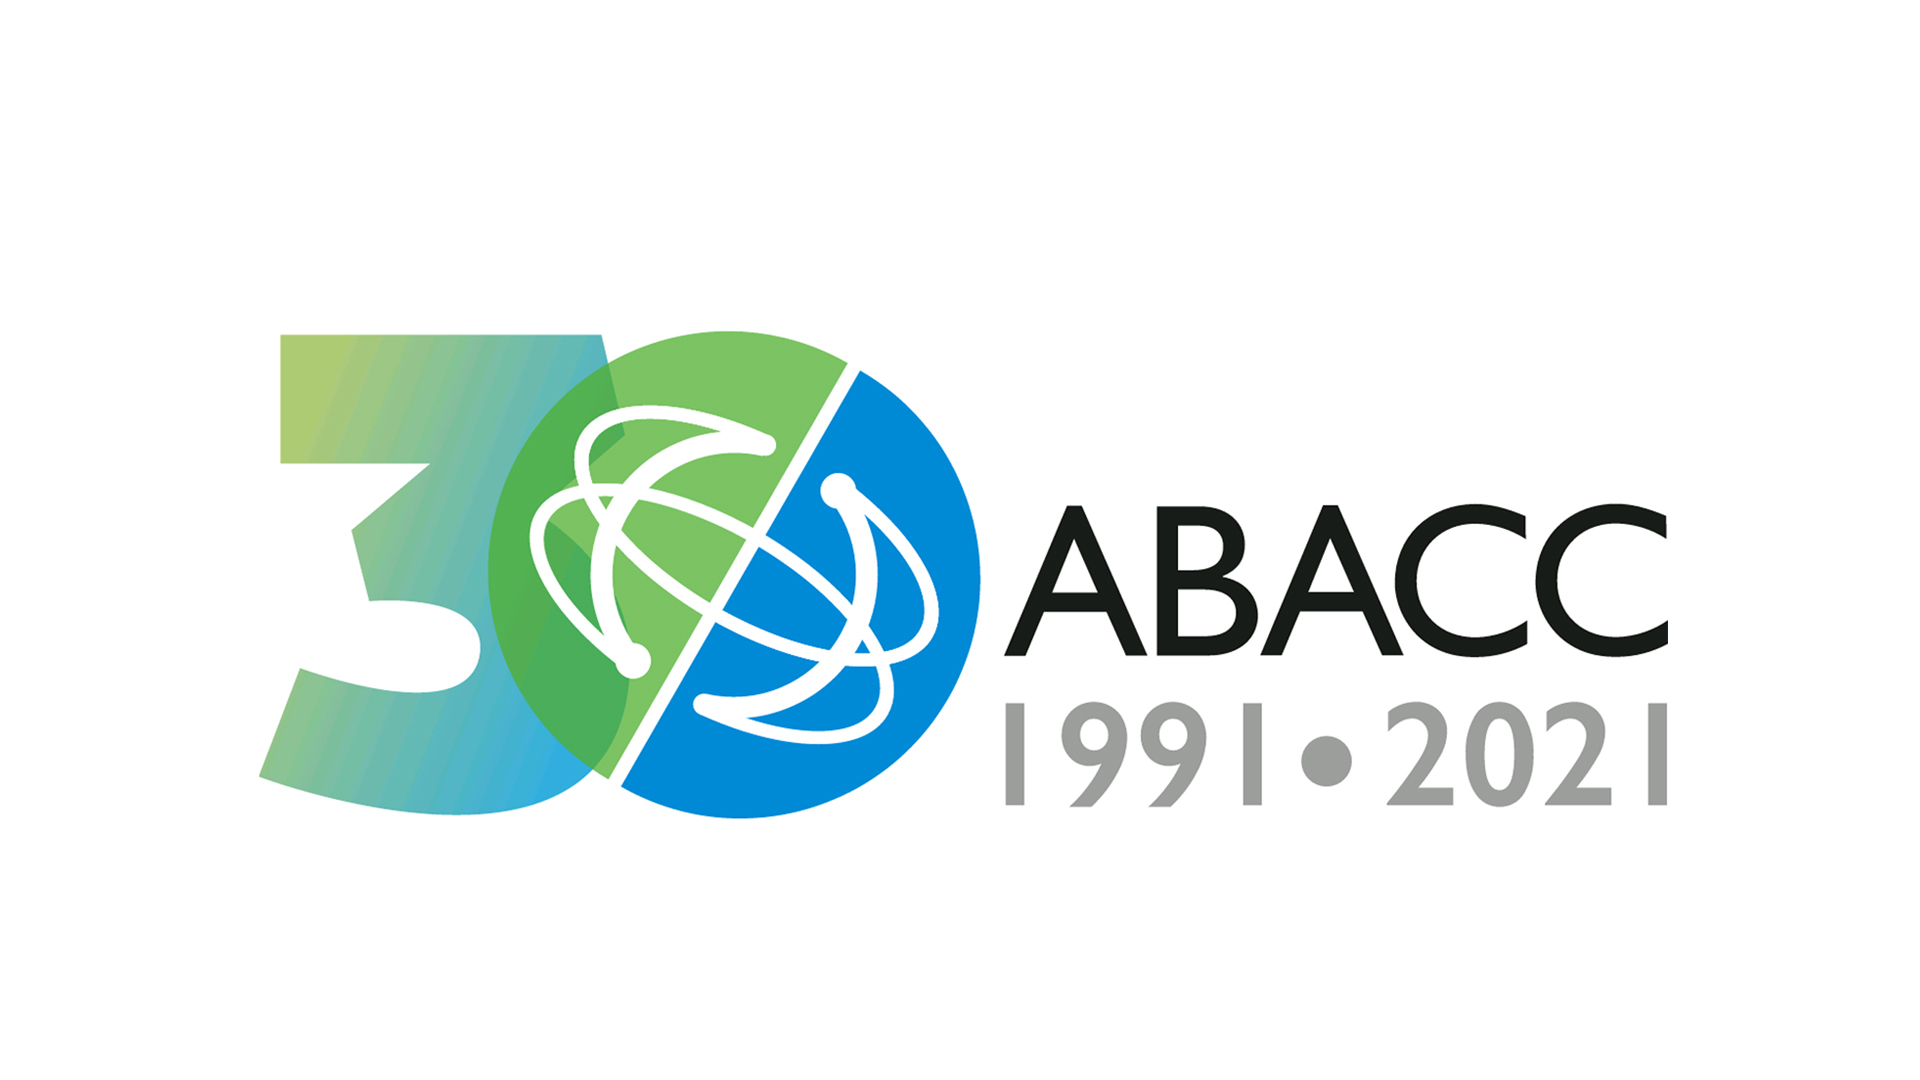 30° Aniversario de la creación de la ABACC. Hitos, aprendizajes y desafíos en el camino de la integración latinoamericana en tecnología e innovación nuclear.